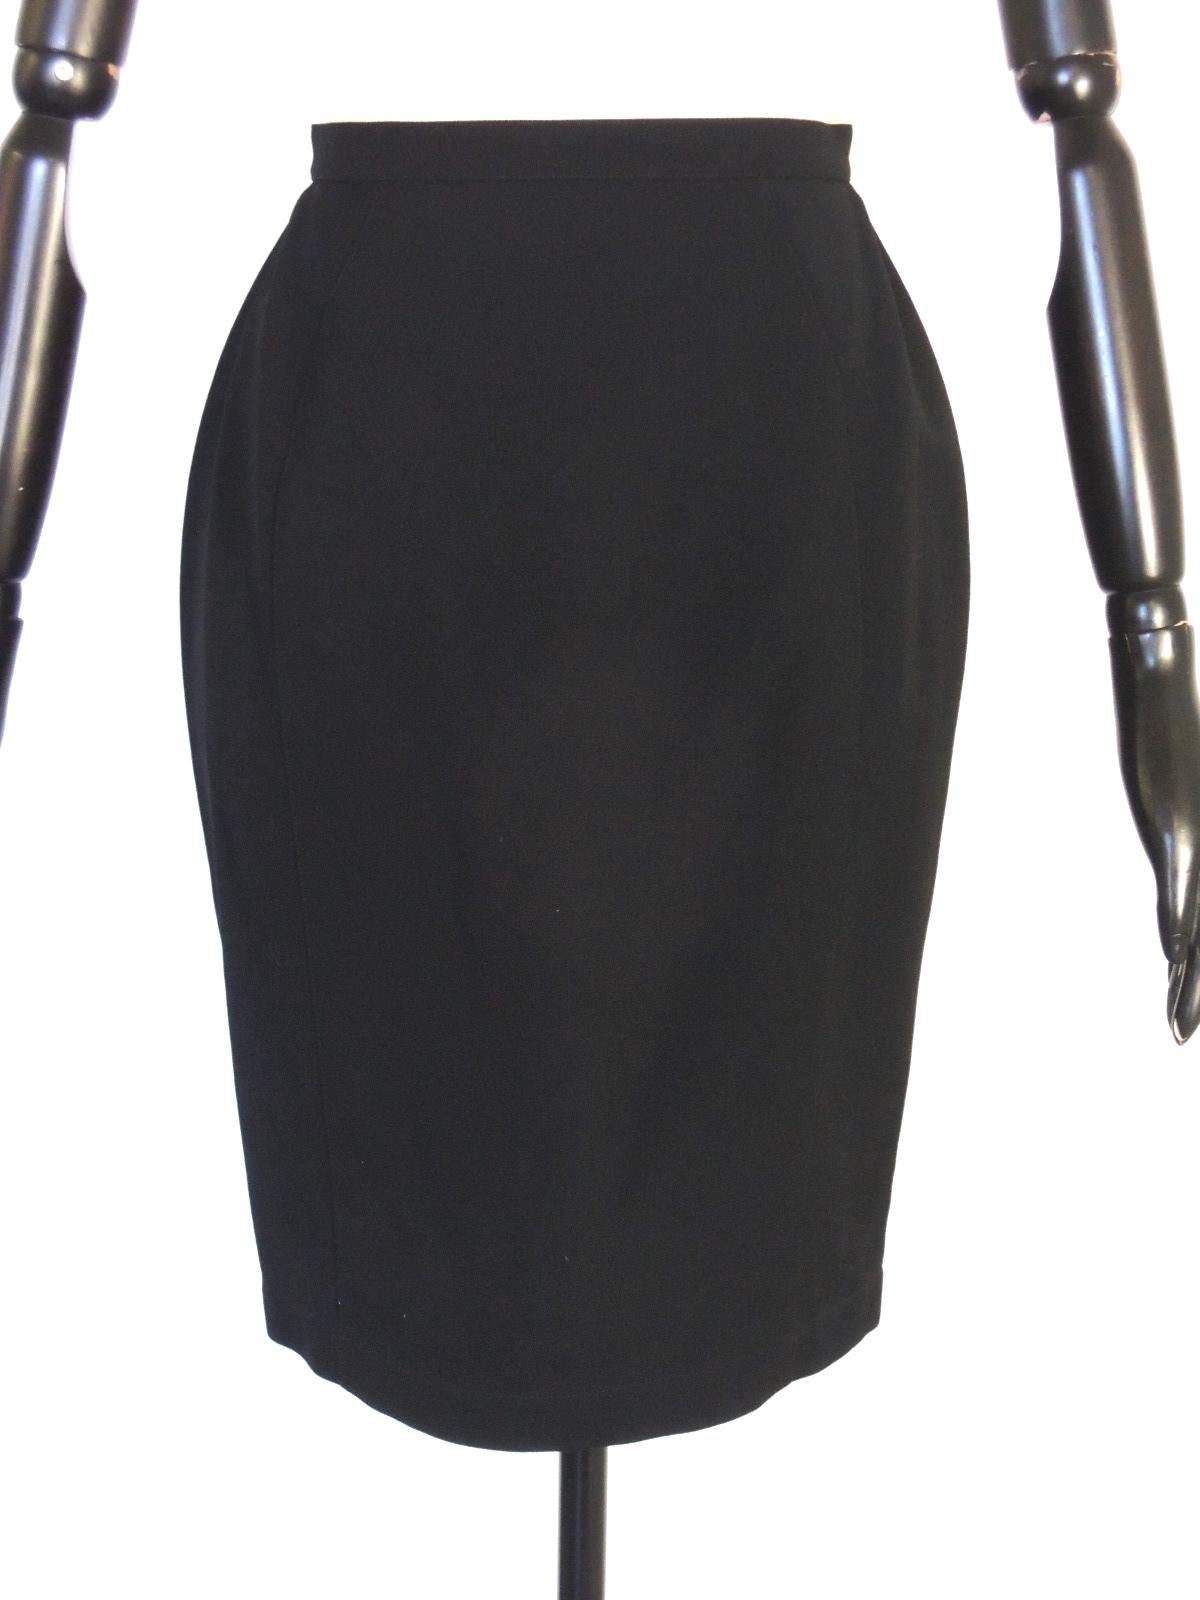 Thierry Mugler Vintage Black Embellished Skirt Suit For Sale 6